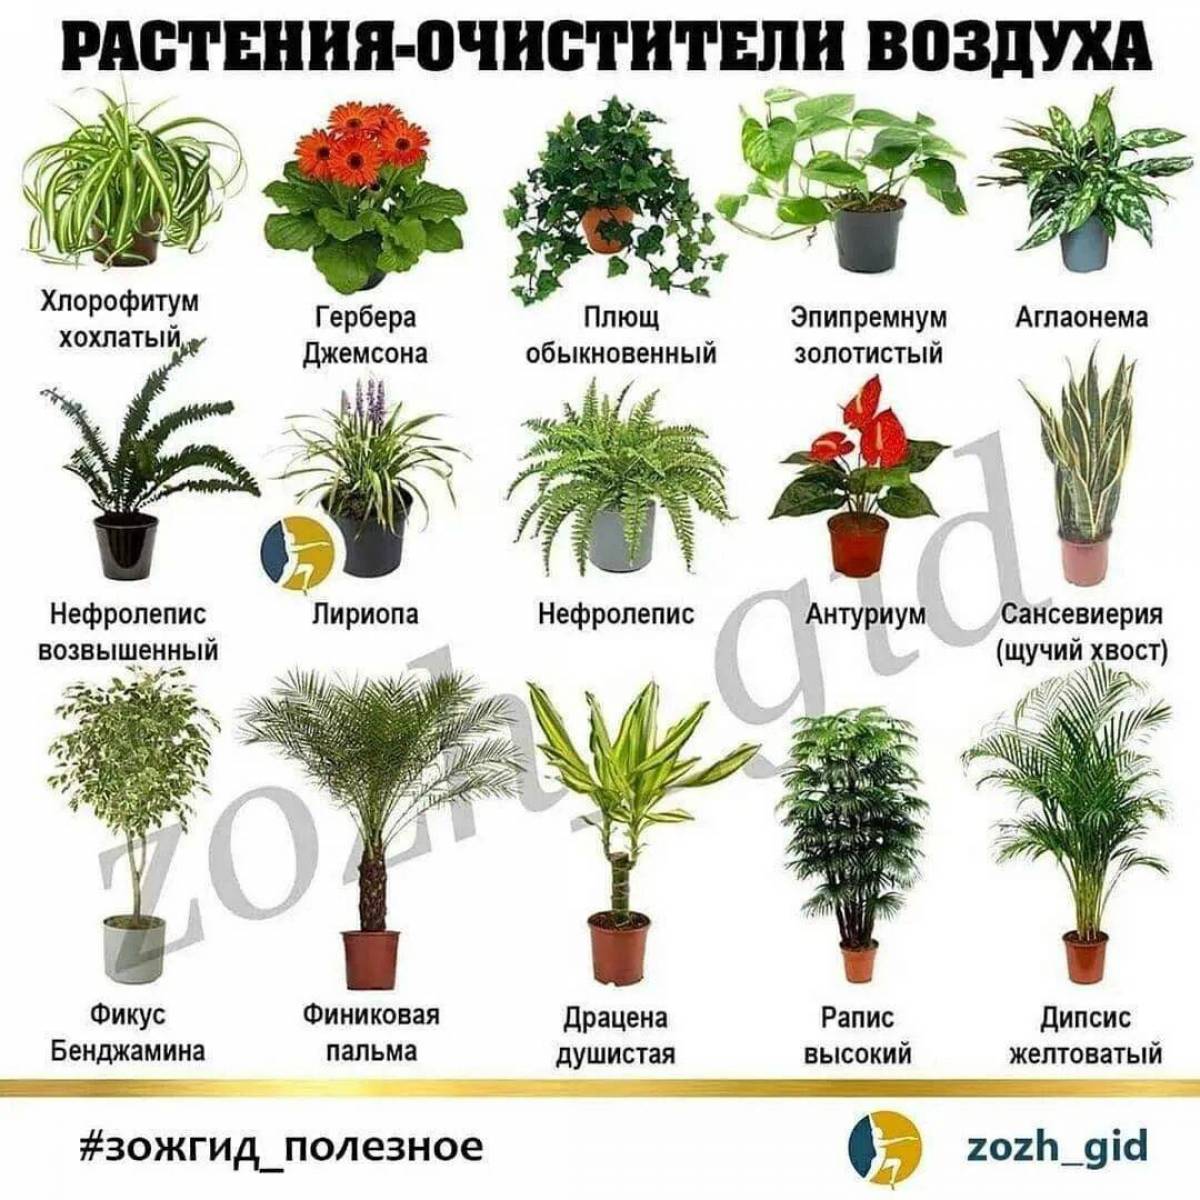 Комнатные растения для детей с названиями #25